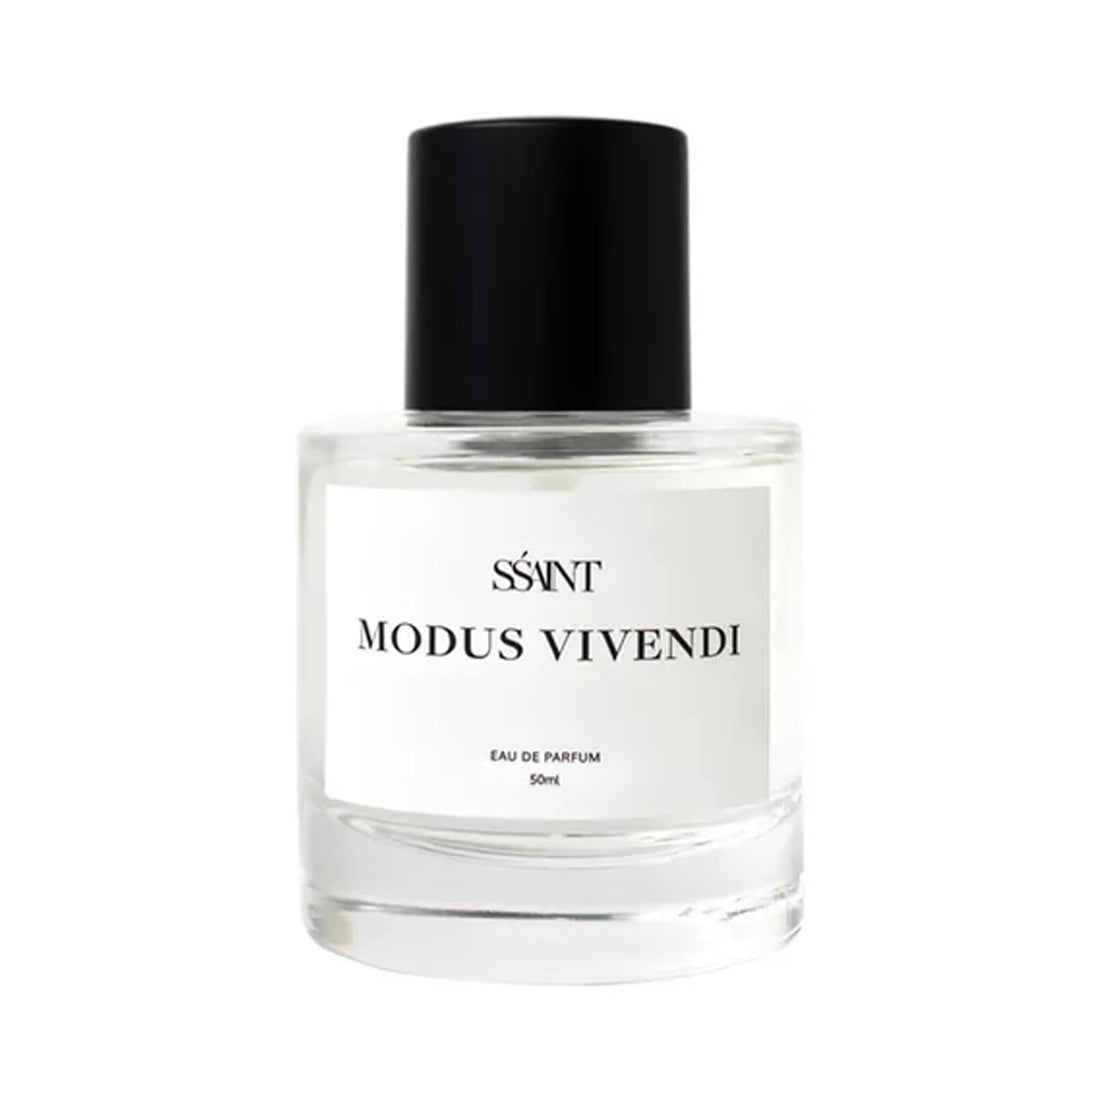 SŚAINT Parfum Modus Vivendi 50ml